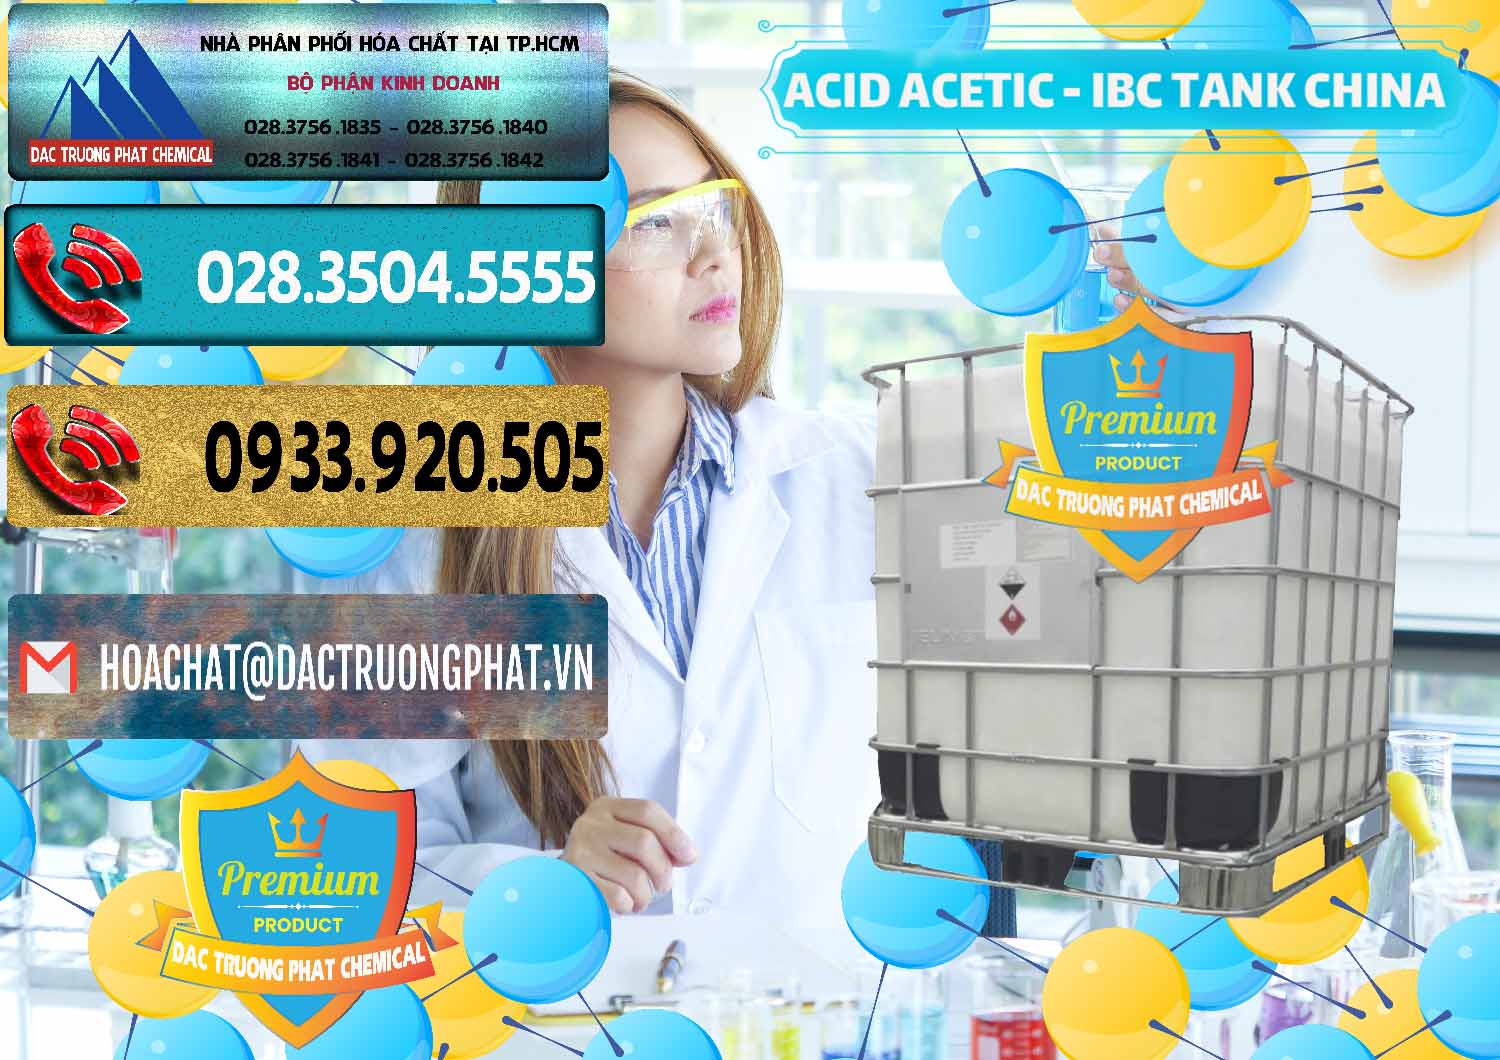 Đơn vị chuyên cung cấp & bán Acetic Acid – Axit Acetic Tank Bồn IBC Trung Quốc China - 0443 - Nhà nhập khẩu & phân phối hóa chất tại TP.HCM - hoachatdetnhuom.com